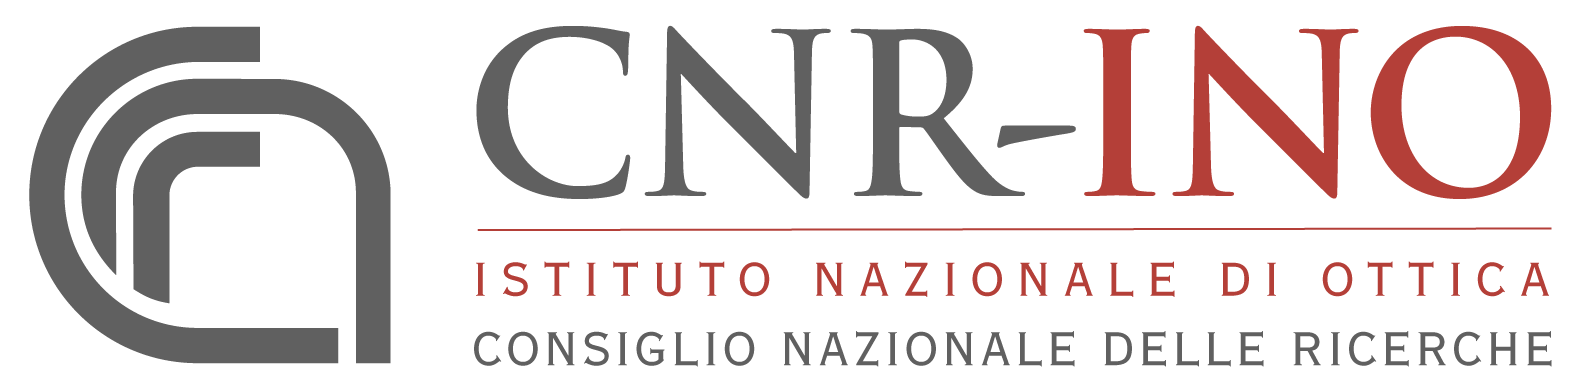 CNR-INO